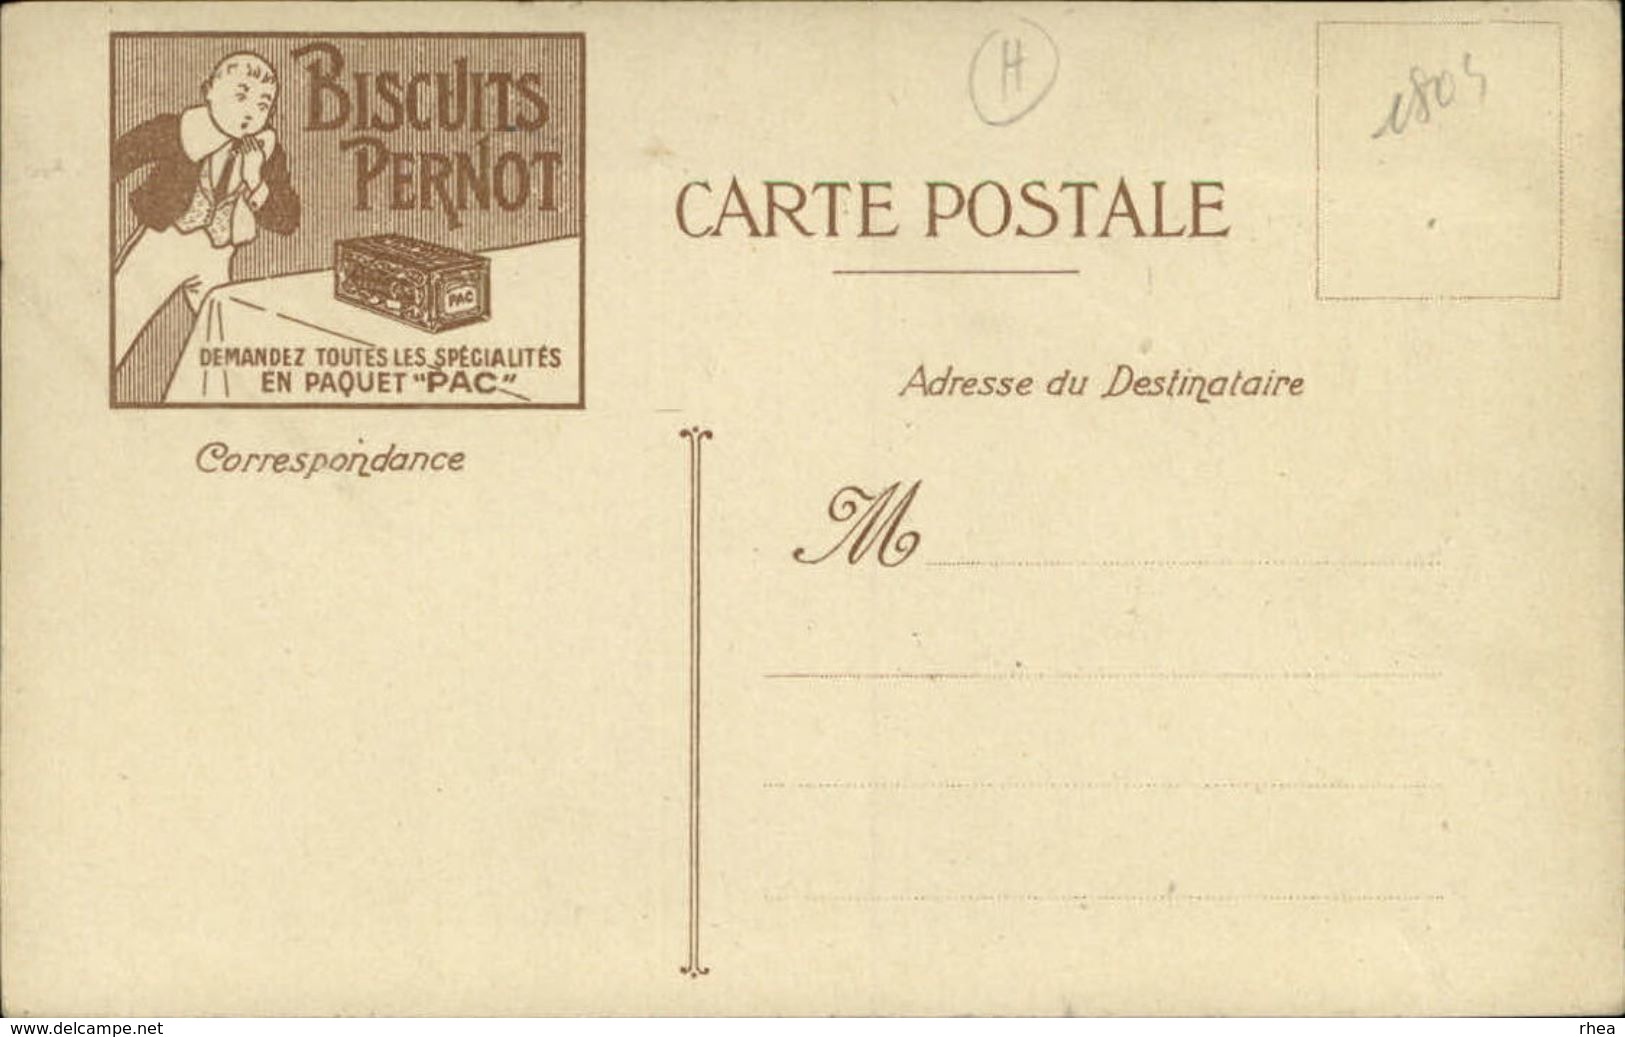 ILLUSTRATEURS - Carte Illustrée Par LOIR LUIGI - PARIS-PLAGE - Biscuits Pernot - Loir